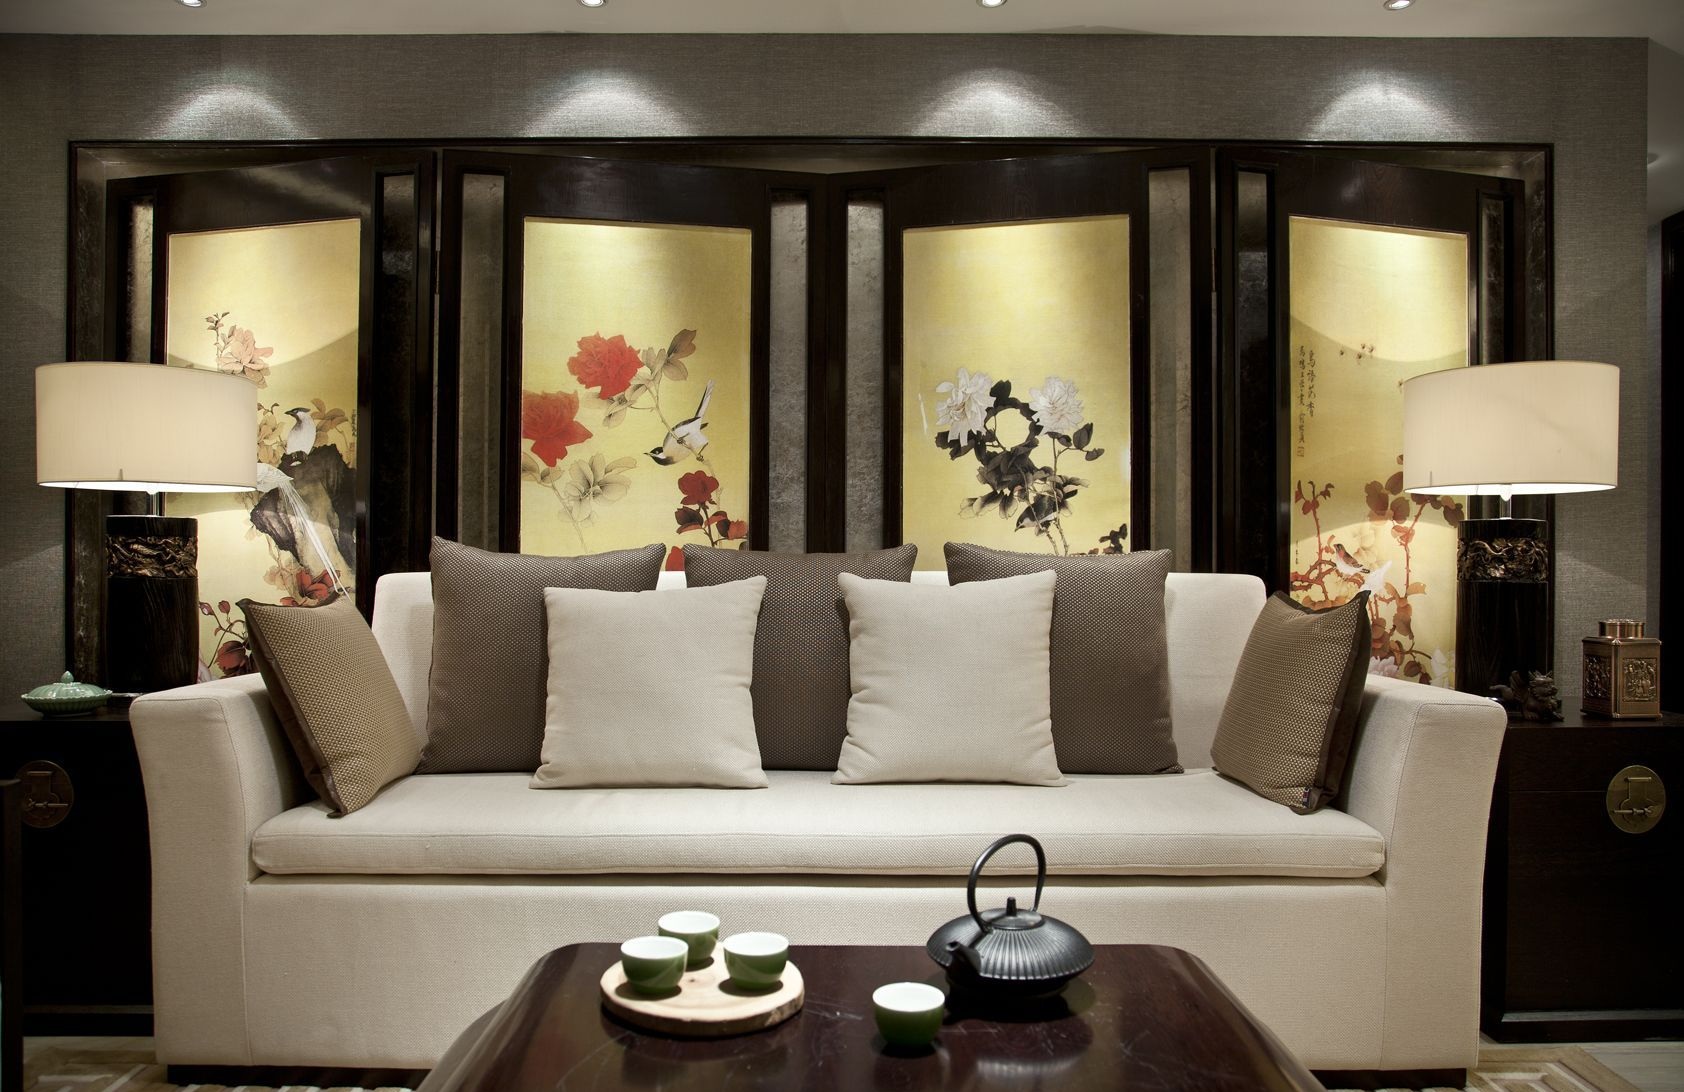 背景布局上采用的经典新中式屏风造型，突出轴线的对称，呈现出高雅静谧的客厅氛围。